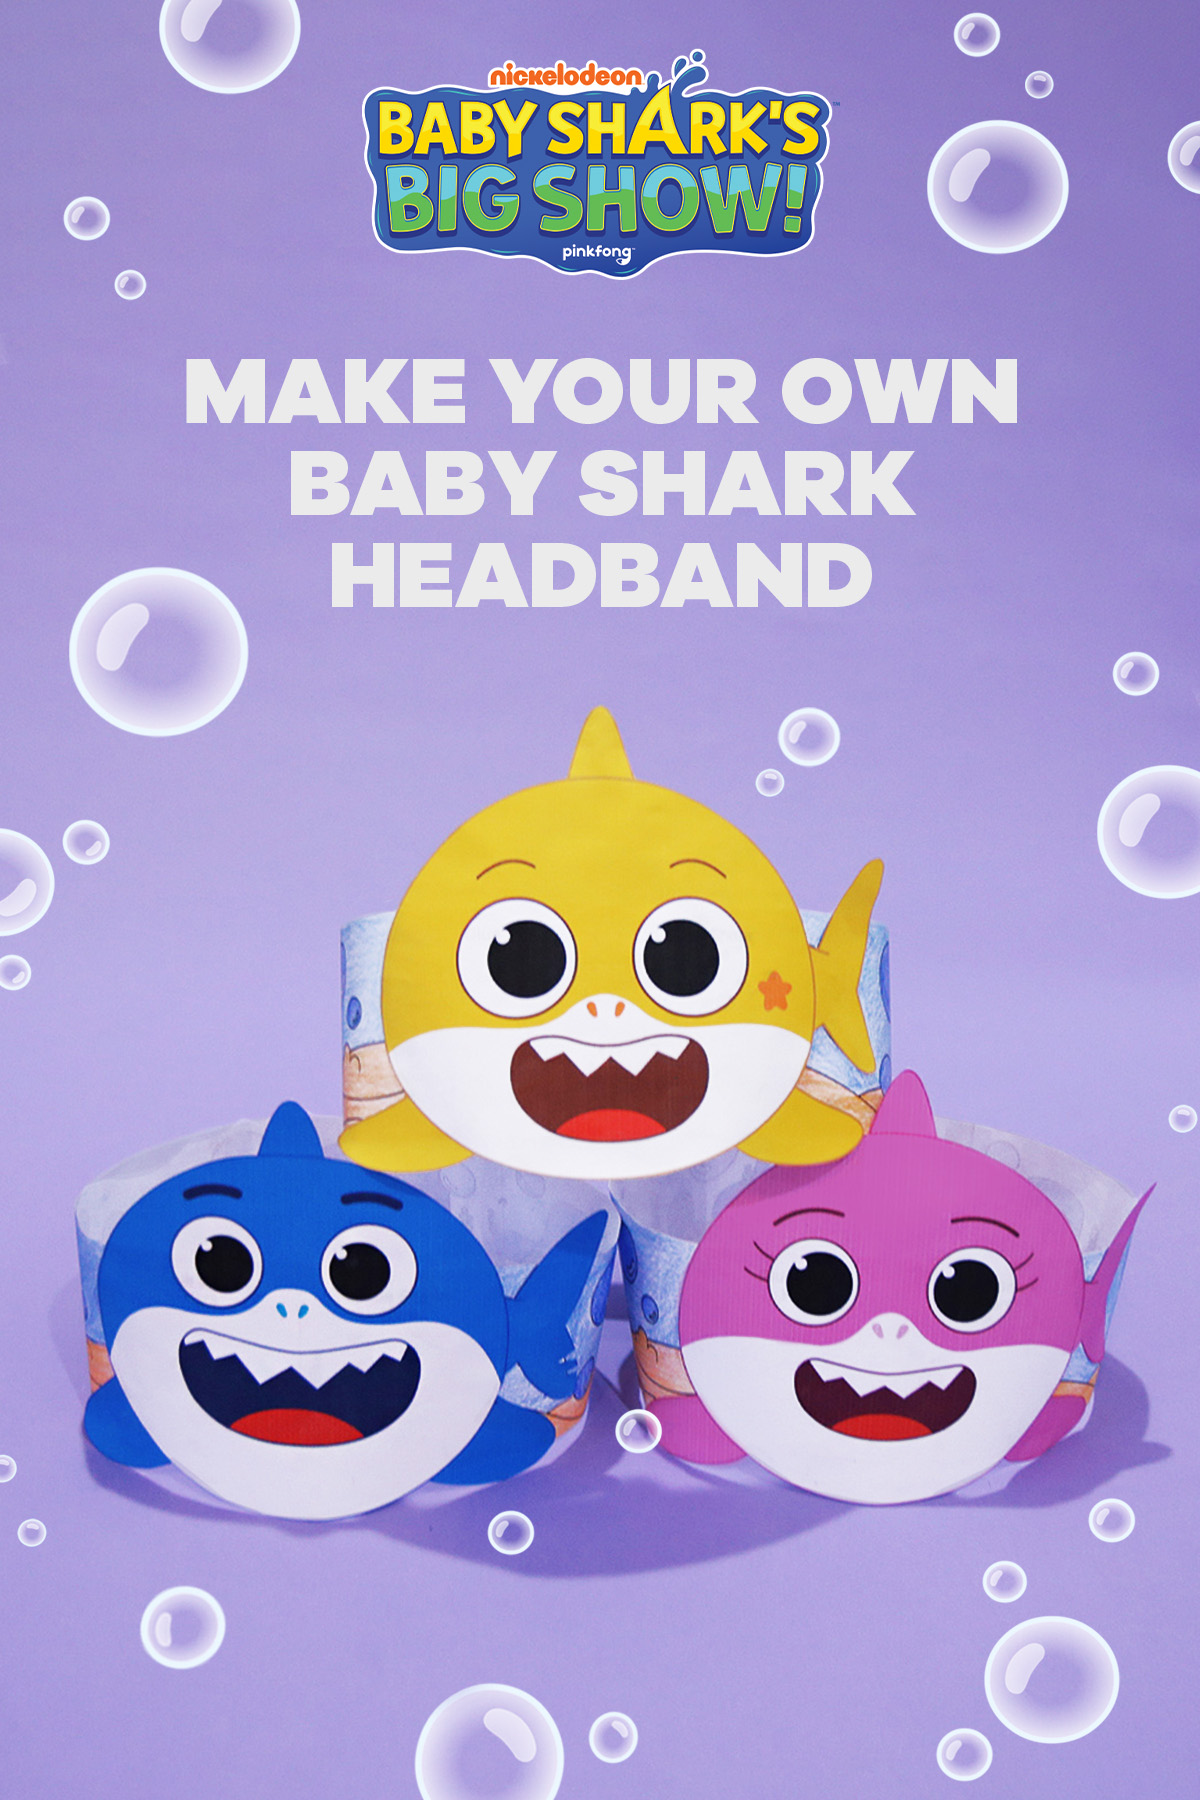 Hats Off! It's Baby Shark Headbands | Nickelodeon Parents